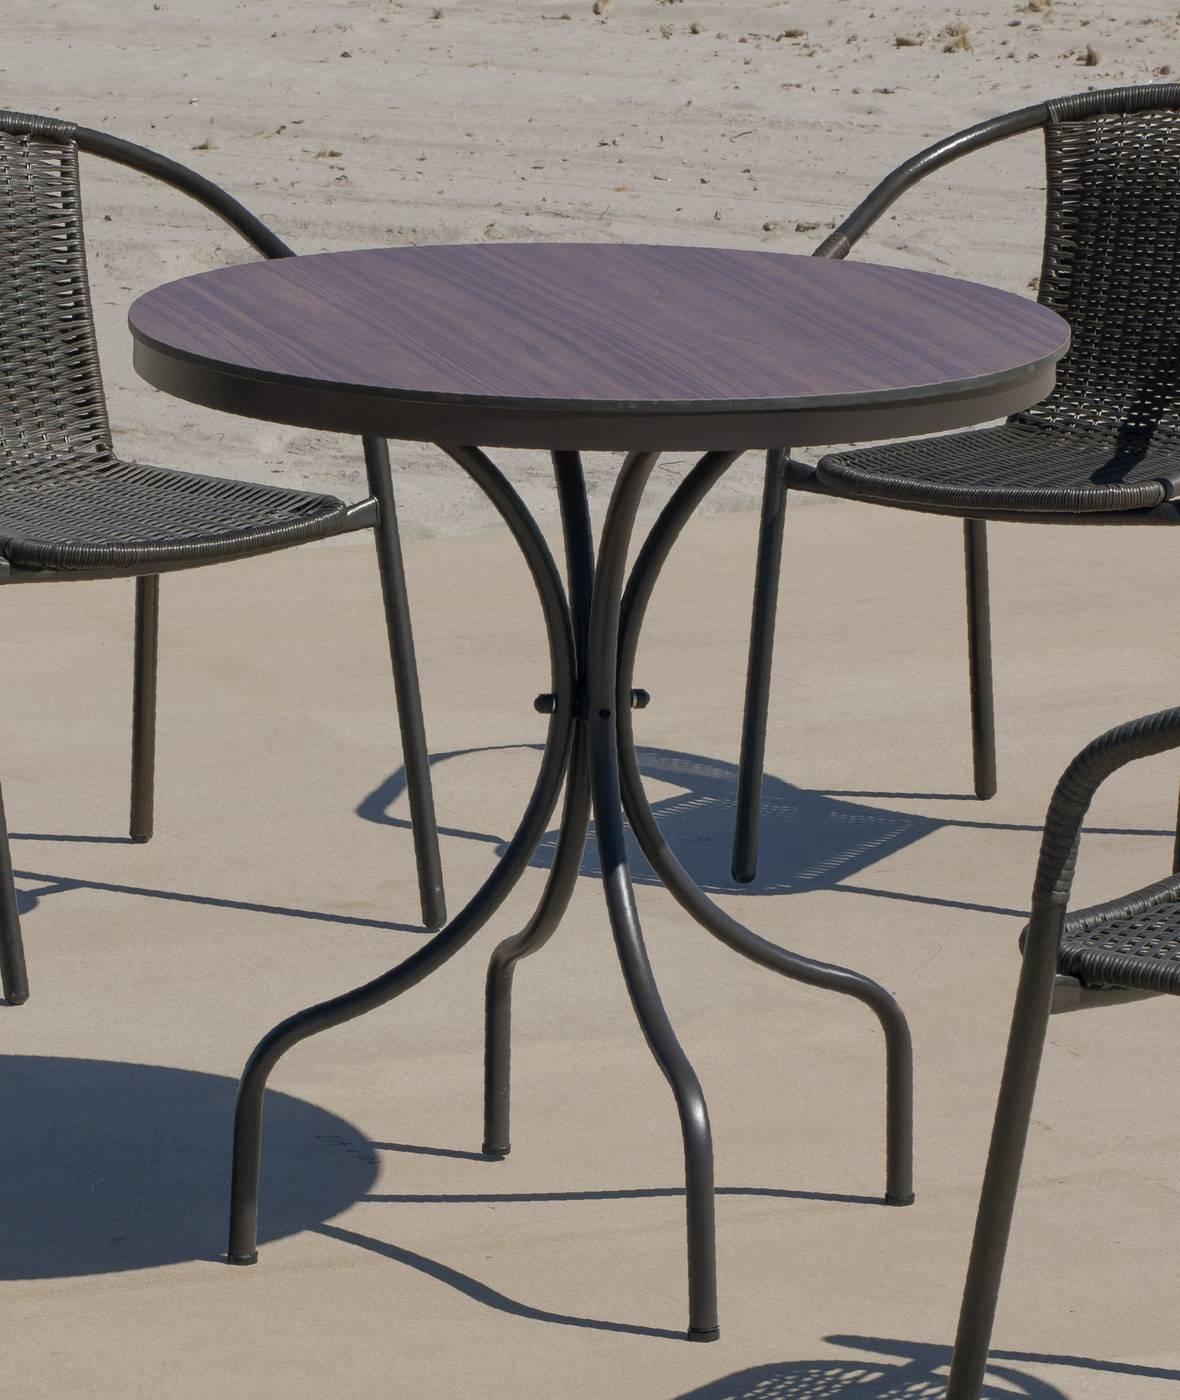 Set Dubay-75-4 Leiran - Conjunto aluminio color marrón: Mesa redonda con tablero HPL de 75 cm + 4 sillones de textilen.